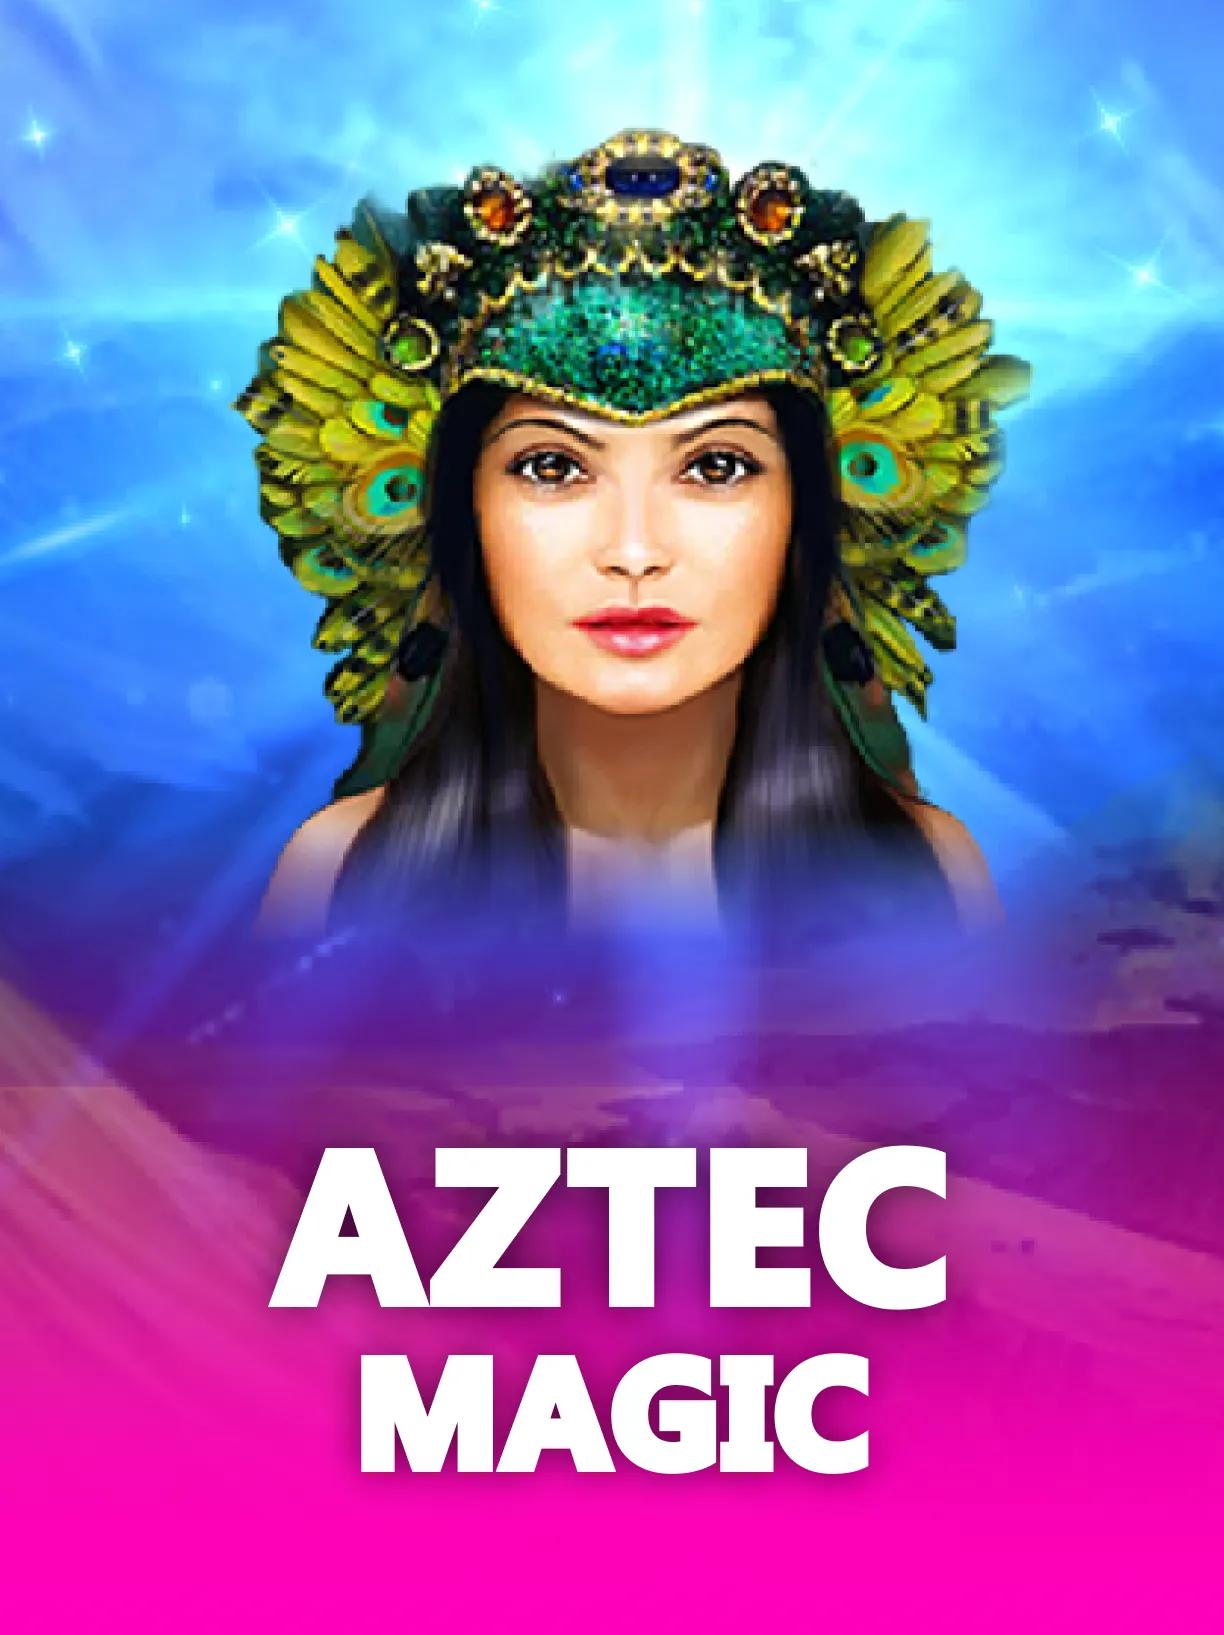 Aztec_Magic_square.webp